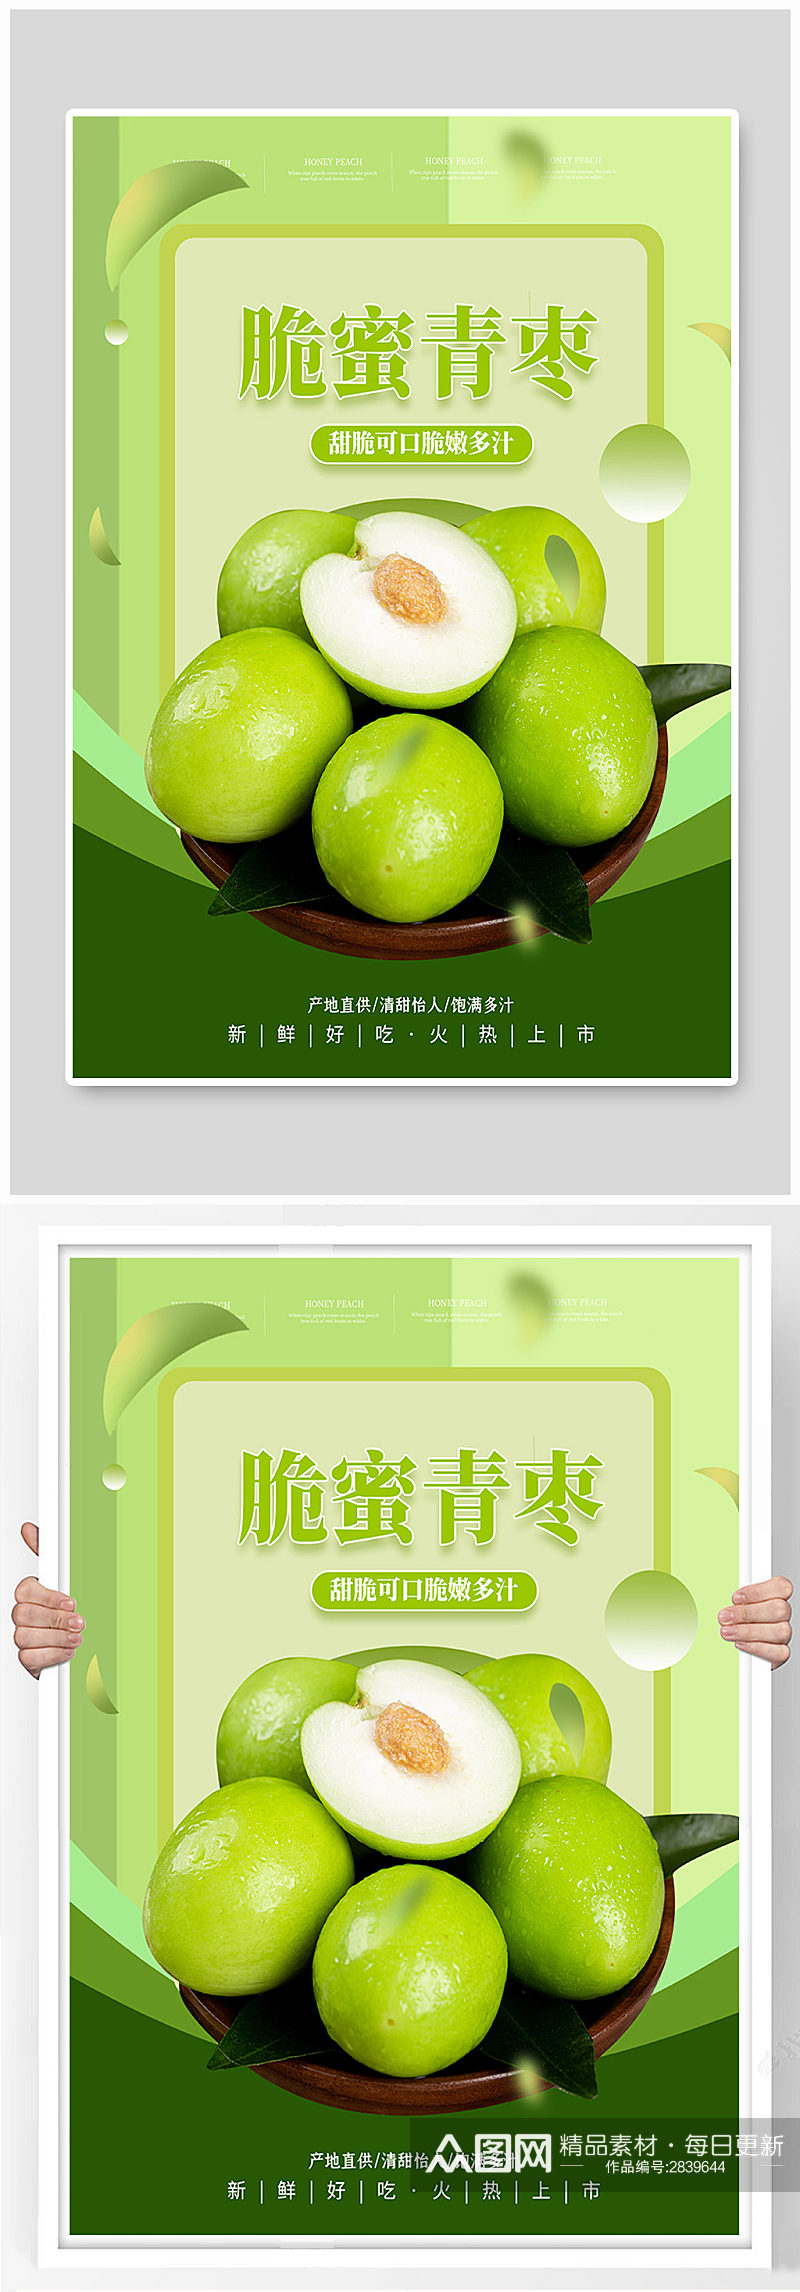 脆蜜青枣水果促销海报素材